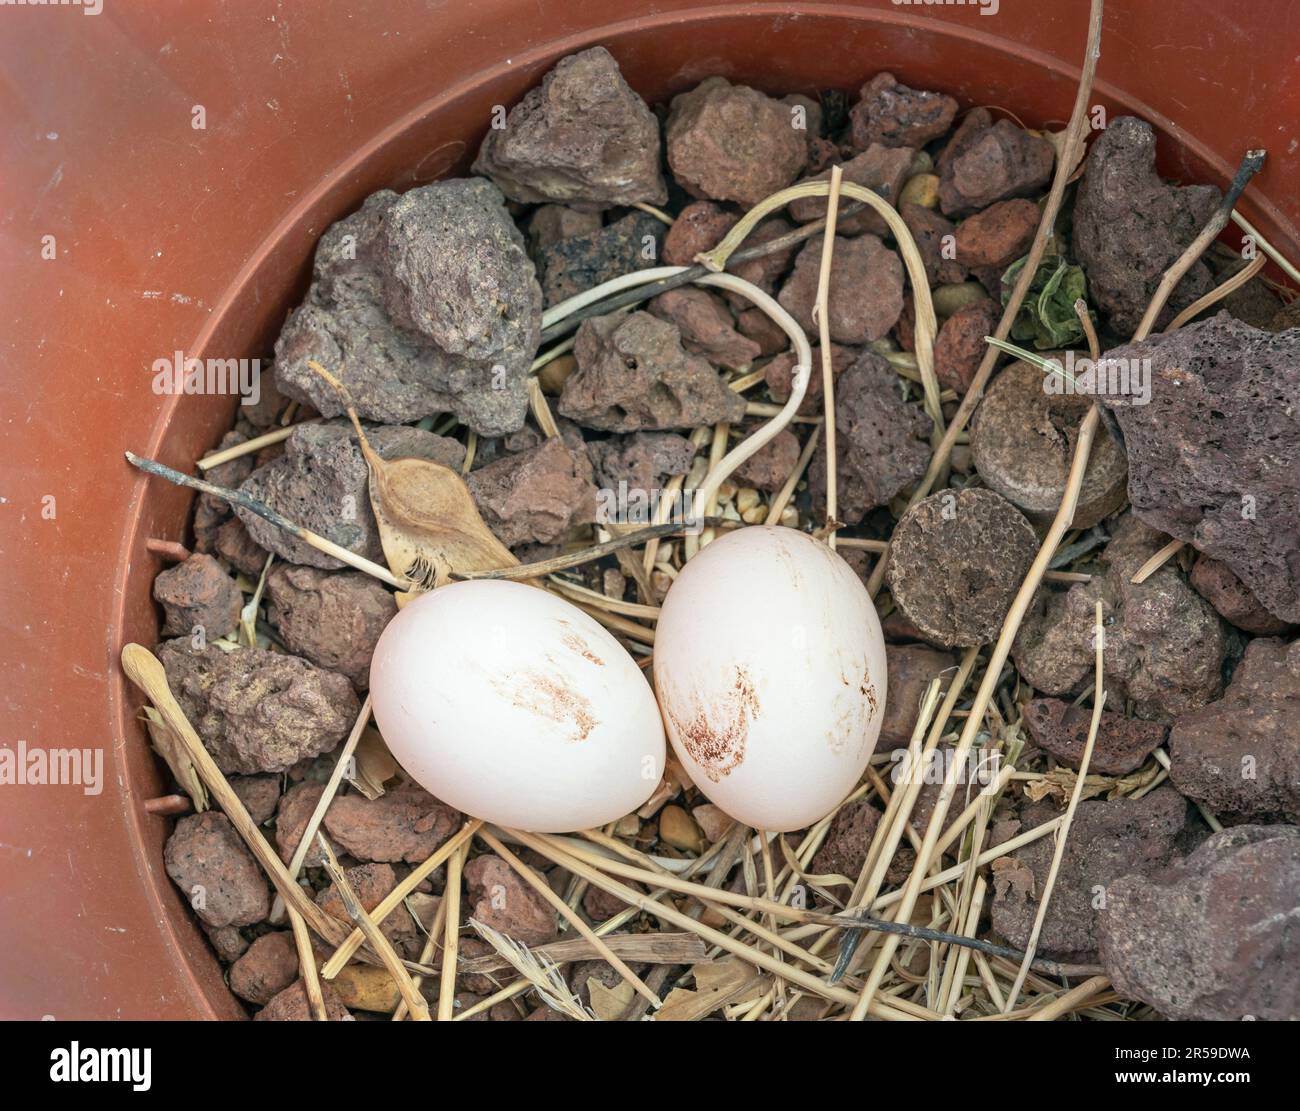 due uova di piccione appena deposte in una pentola di pianta vuota su un nido di bastone tra ciottoli di lava e fette di sughero di vino Foto Stock